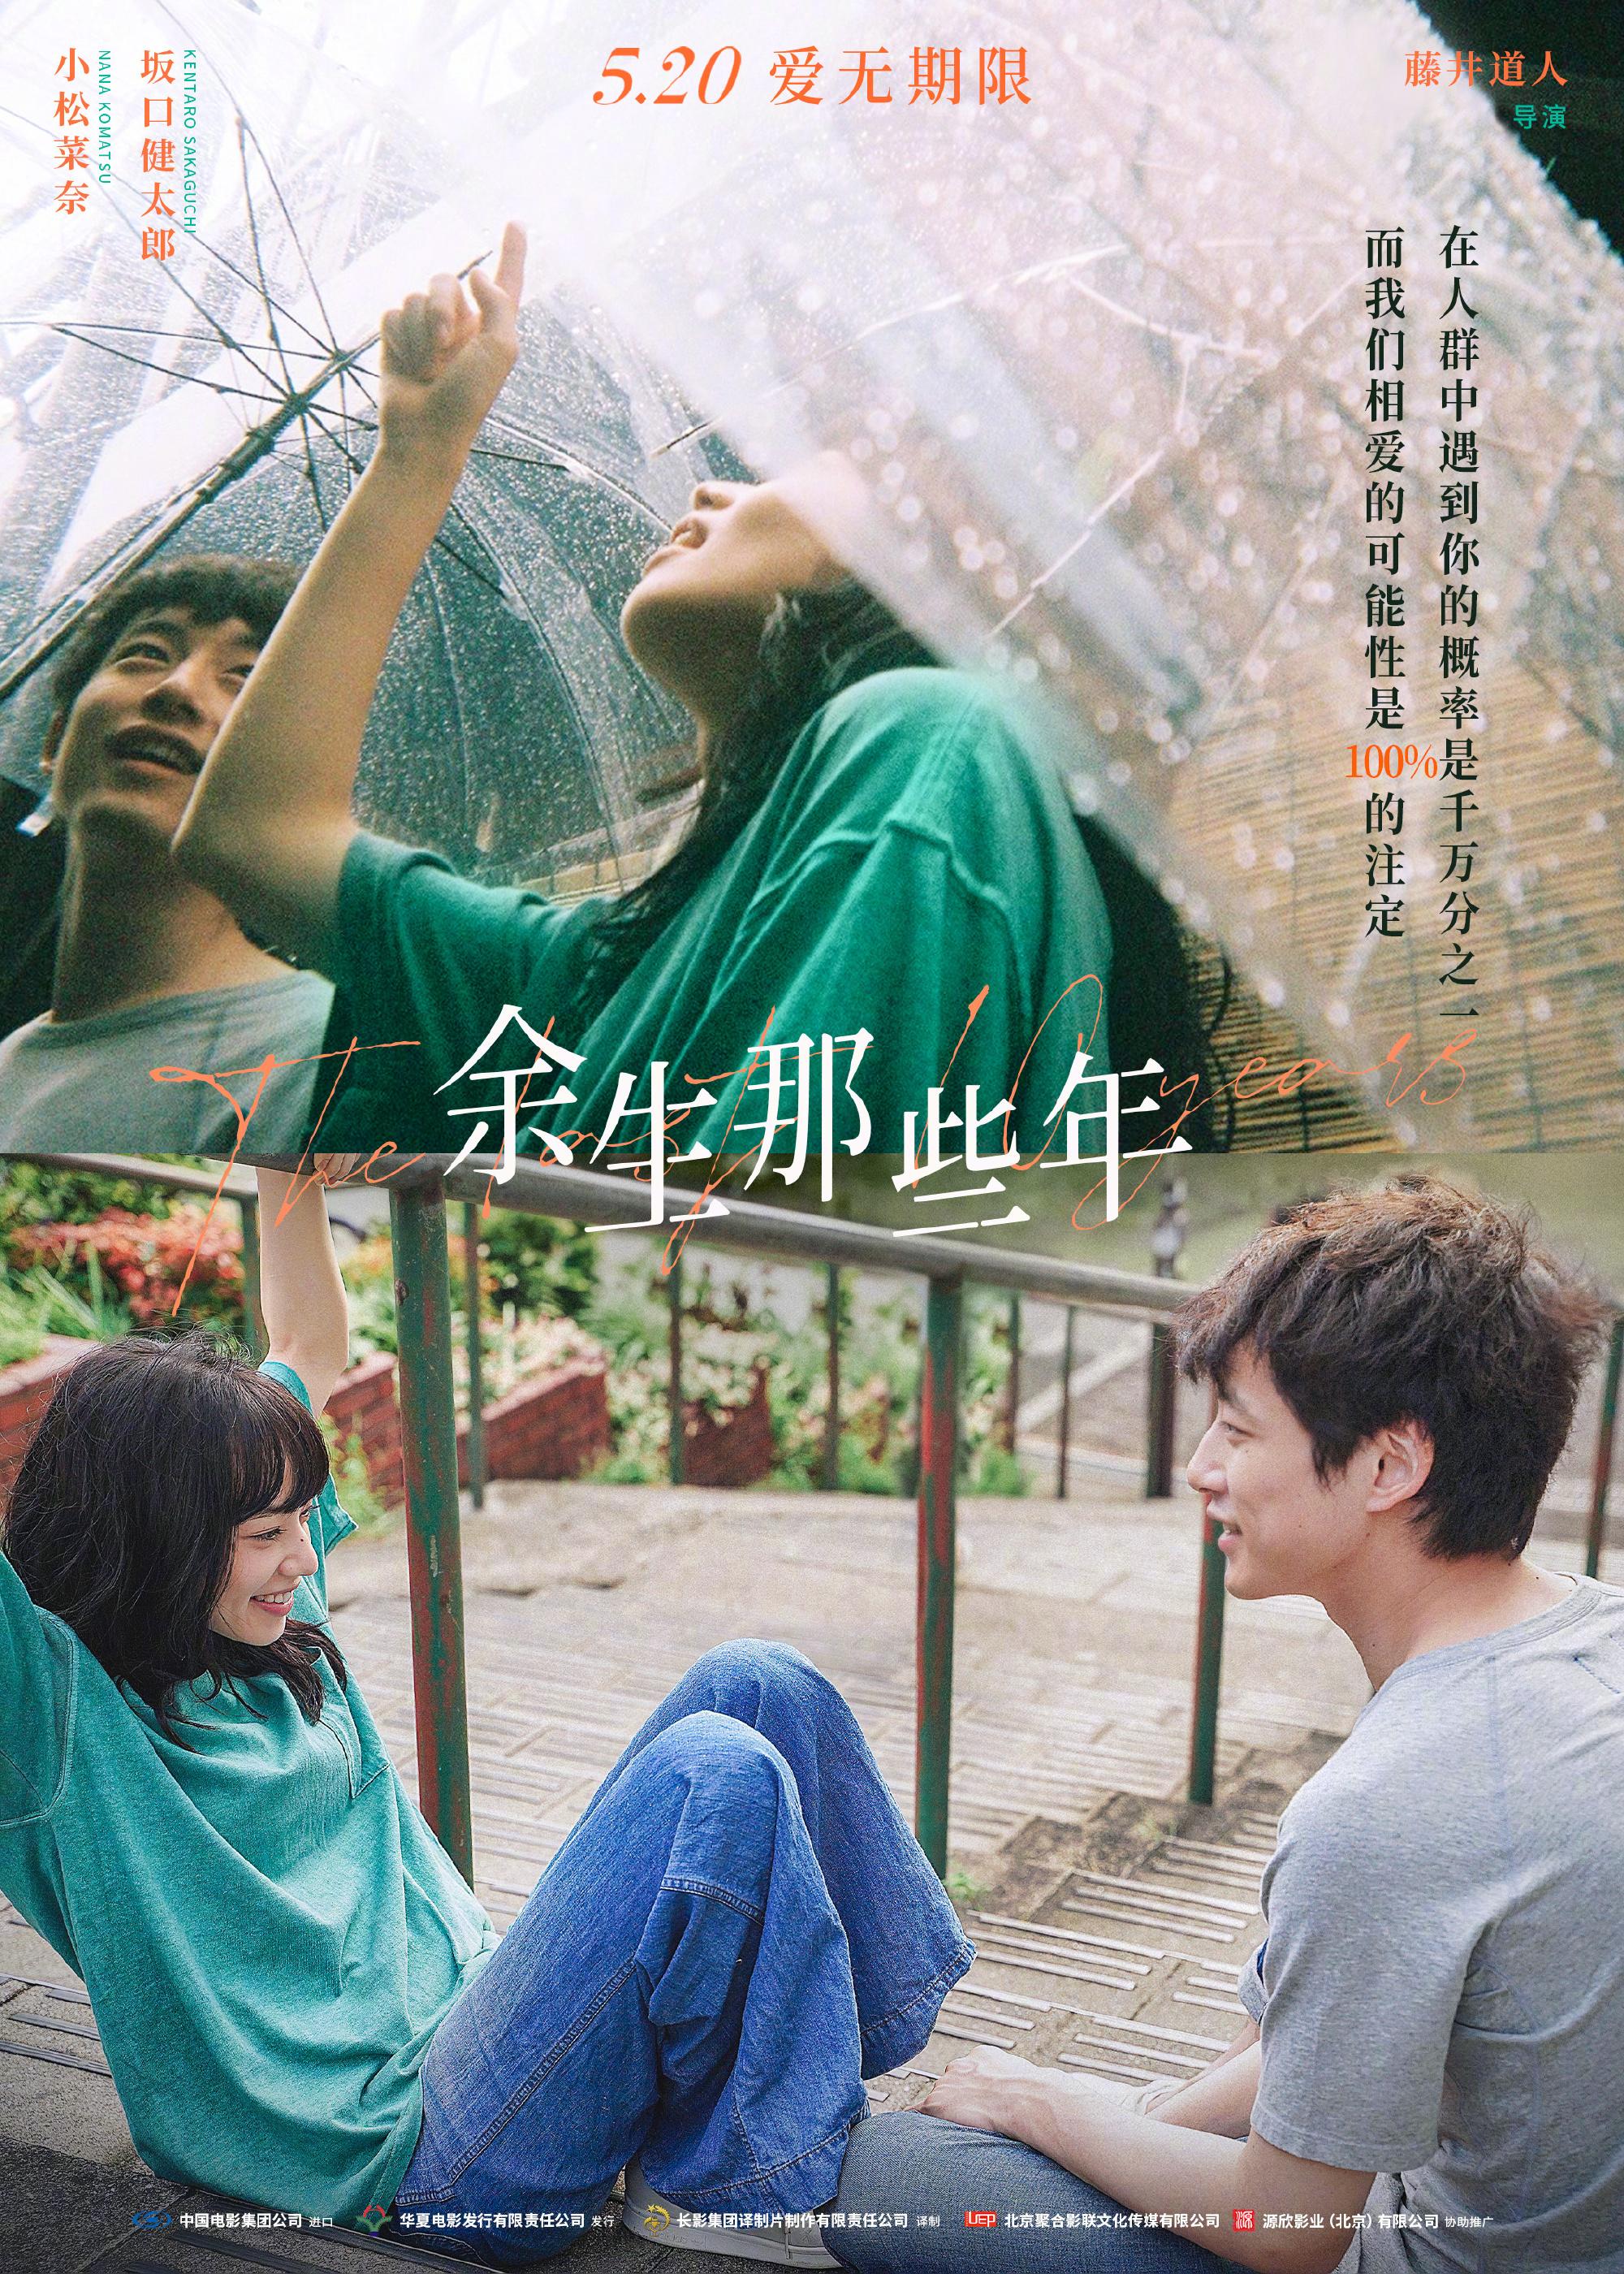 5.20上映电影《余生那些年》发布新预告 坂口健太郎独家问候中国观众